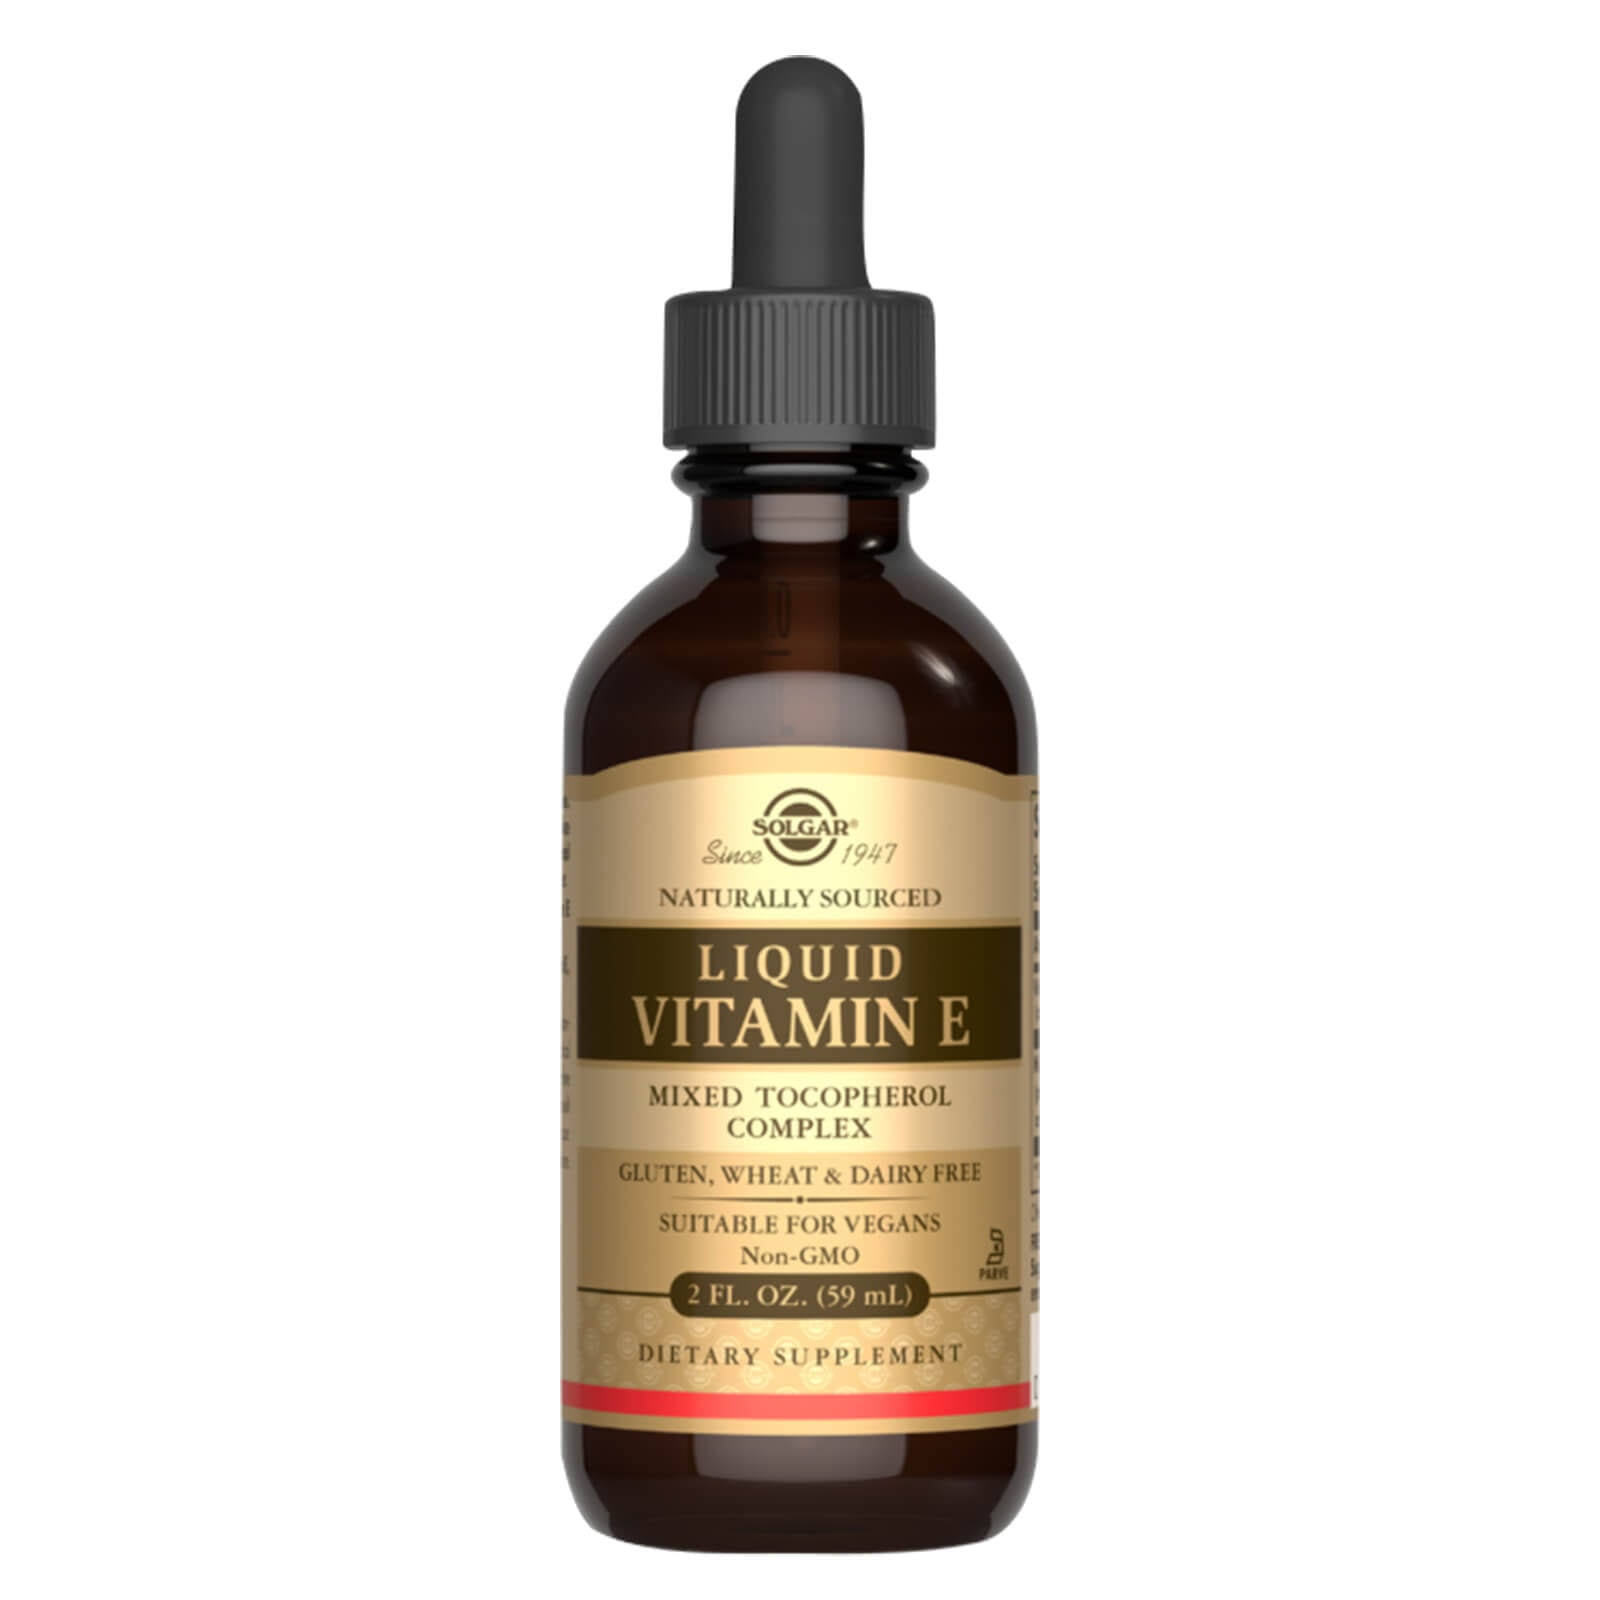 Solgar Natural Liquid Vitamin E Mixed Tocopherol Complex